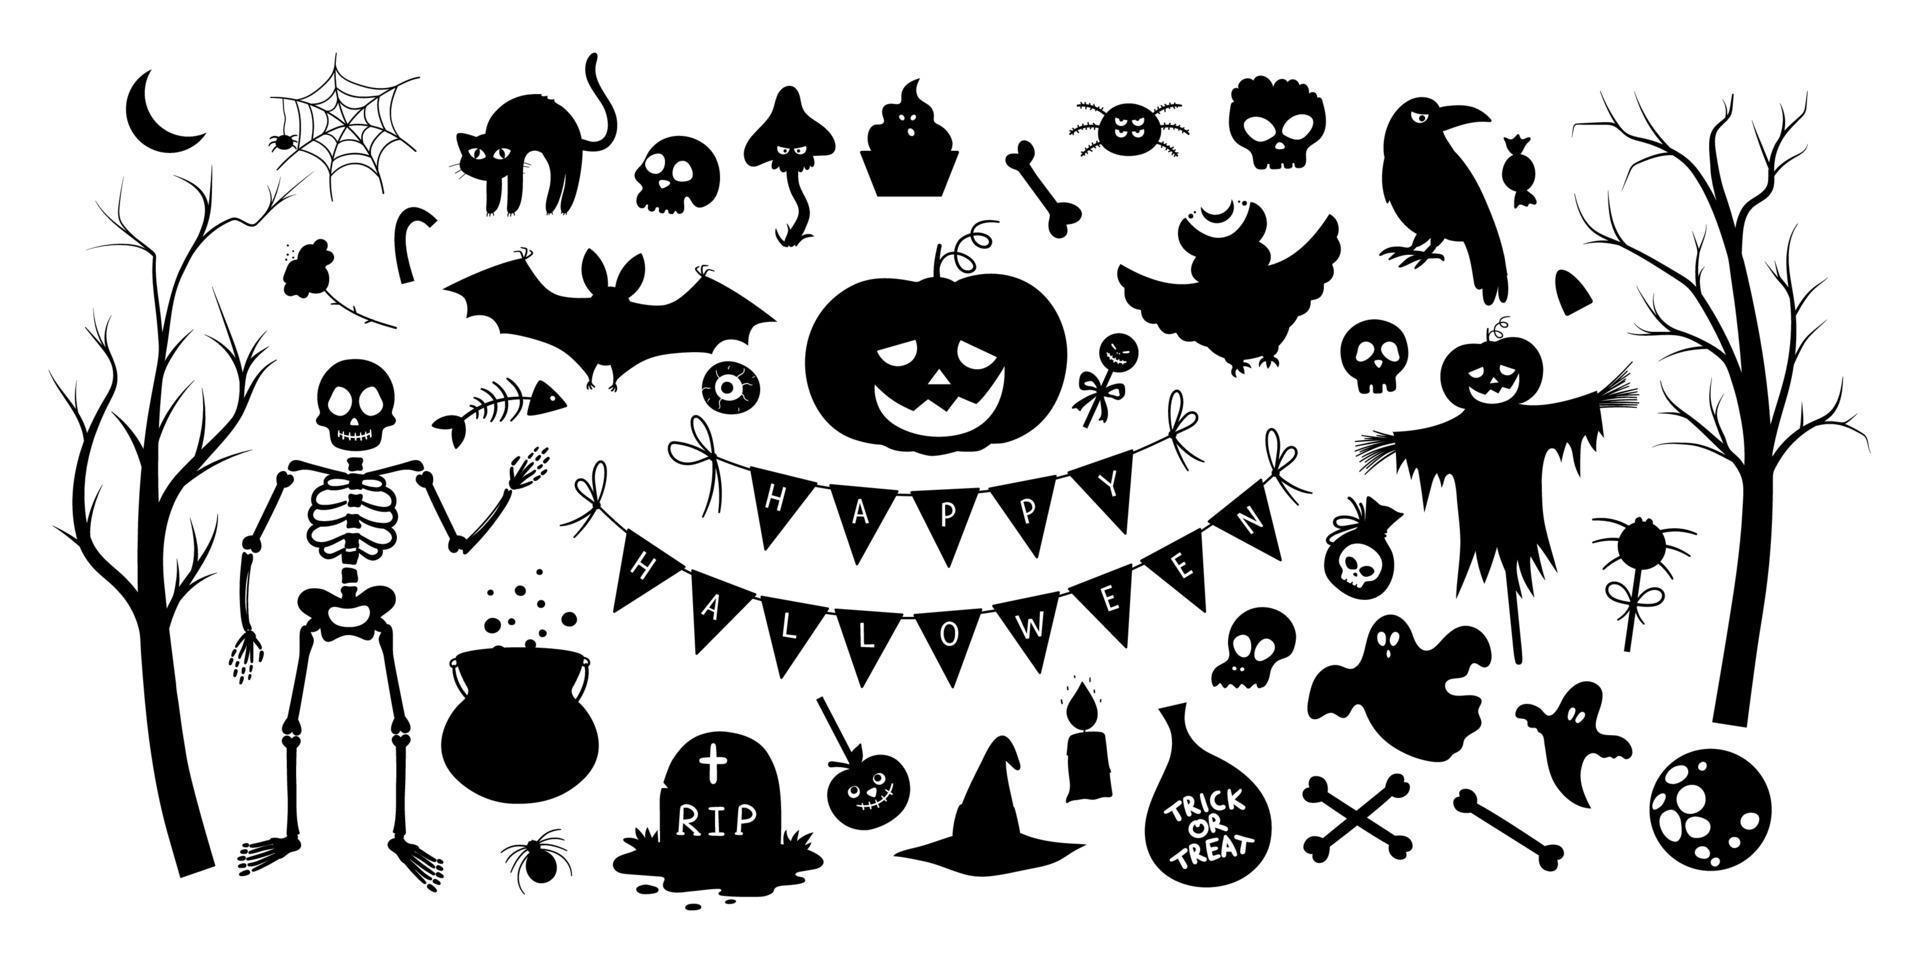 gran conjunto de elementos de silueta de vector de halloween. tradicional fiesta samhain clipart en blanco y negro. colección de sombras aterradoras con jack-o-lantern, araña, fantasma, calavera, murciélagos. diseño de vacaciones de otoño